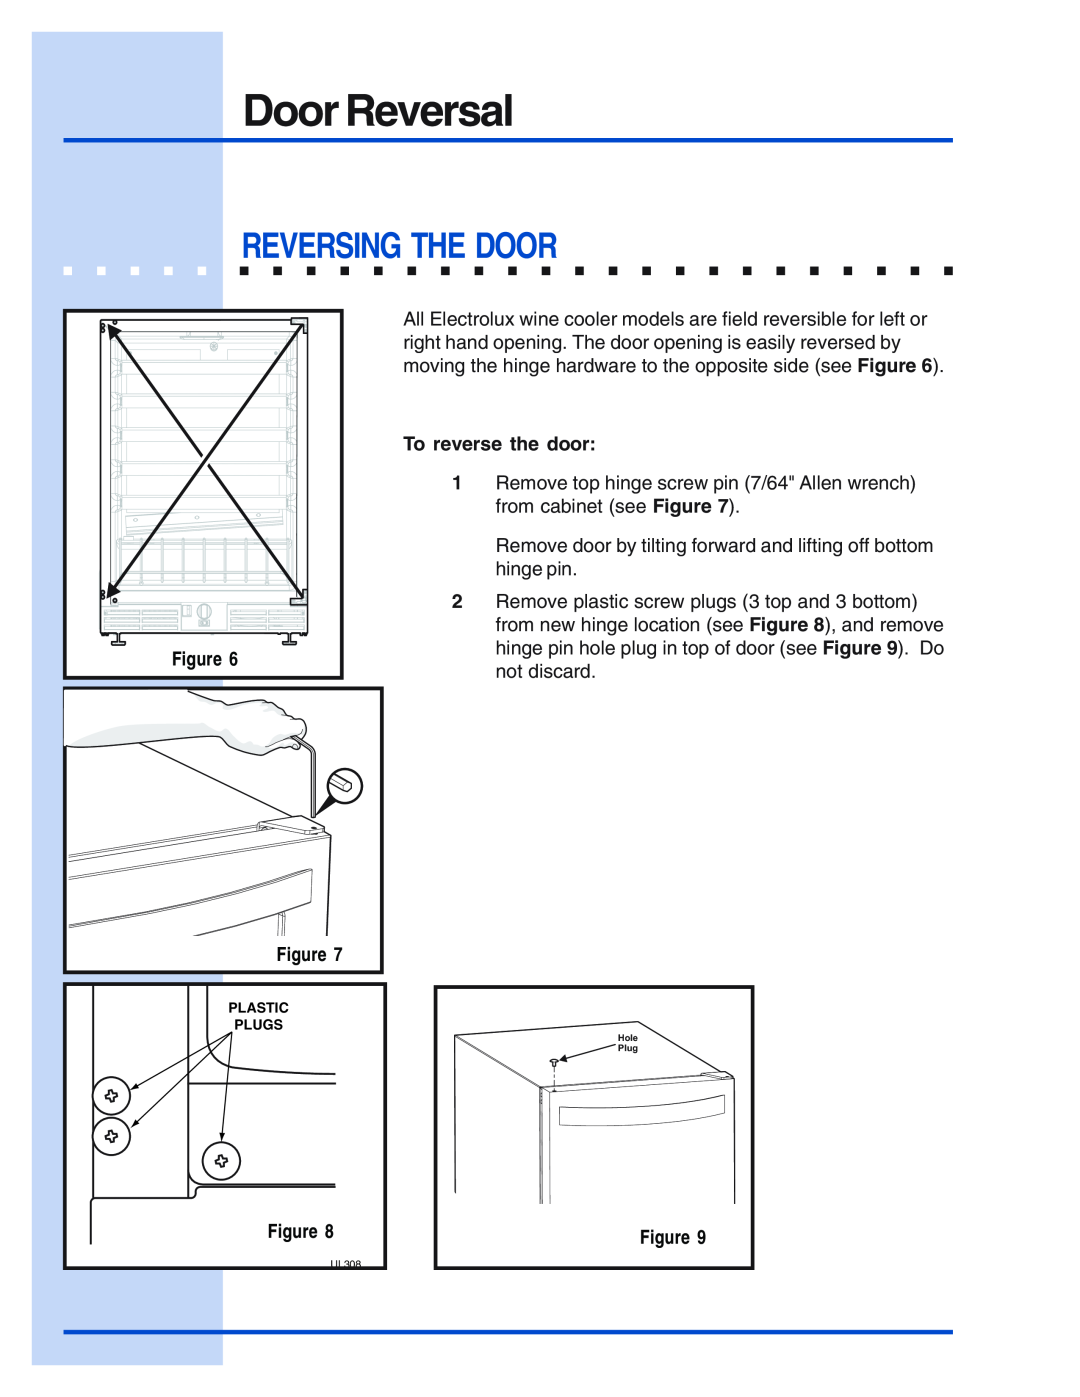 Electrolux Wine Cooler manual Door Reversal, Reversing The Door, To reverse the door 